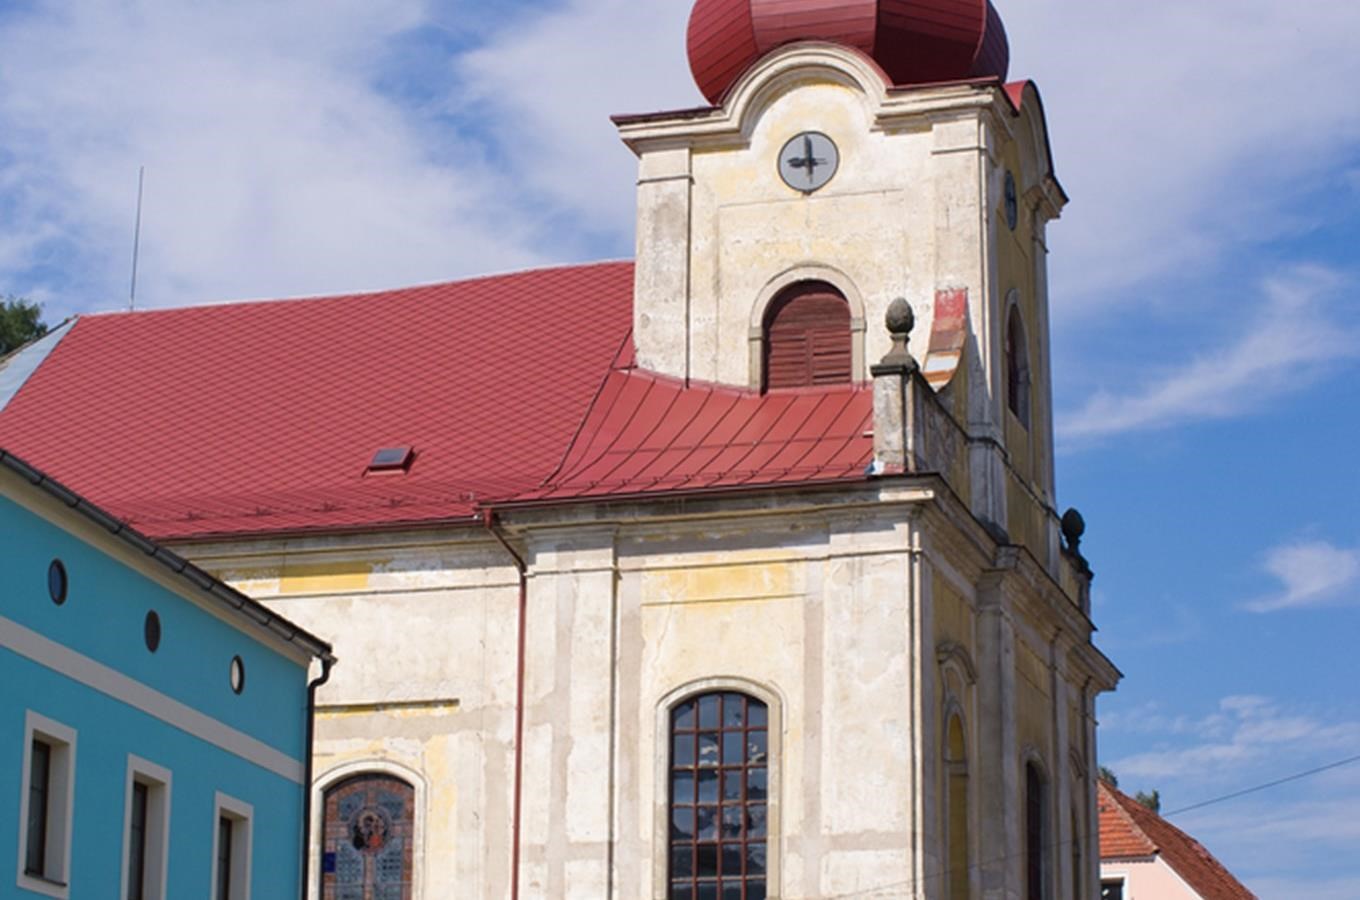 Kostel sv. Vavřince v Teplicích nad Metují